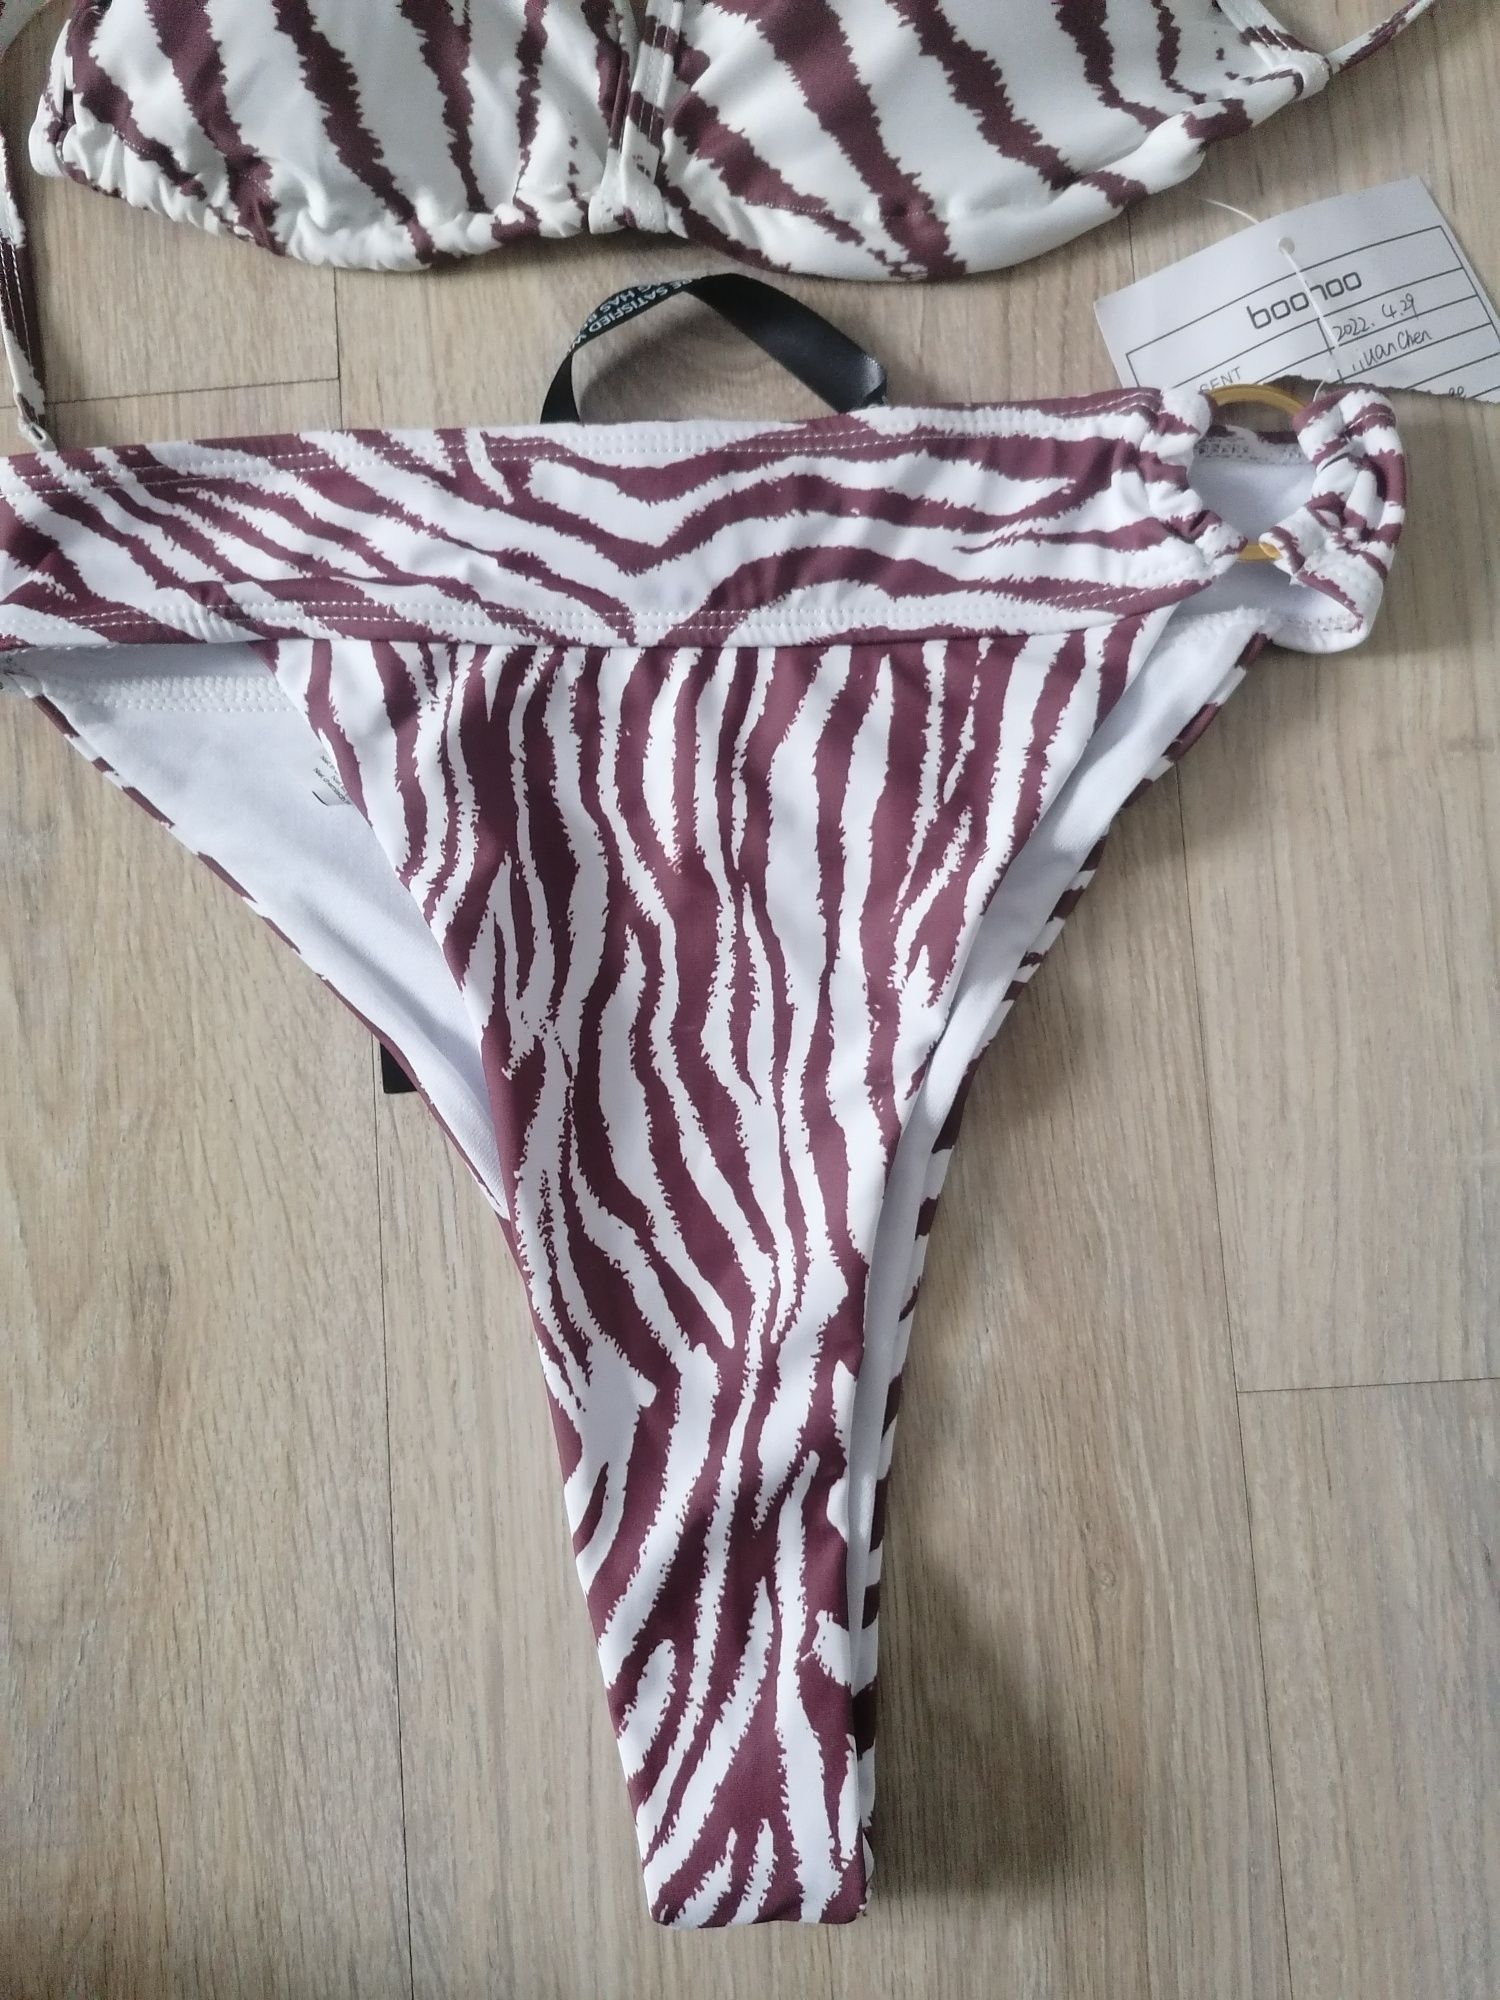 Strój kąpielowy dwuczęściowy S 36 M bikini zebra brąz wycięty wysoki